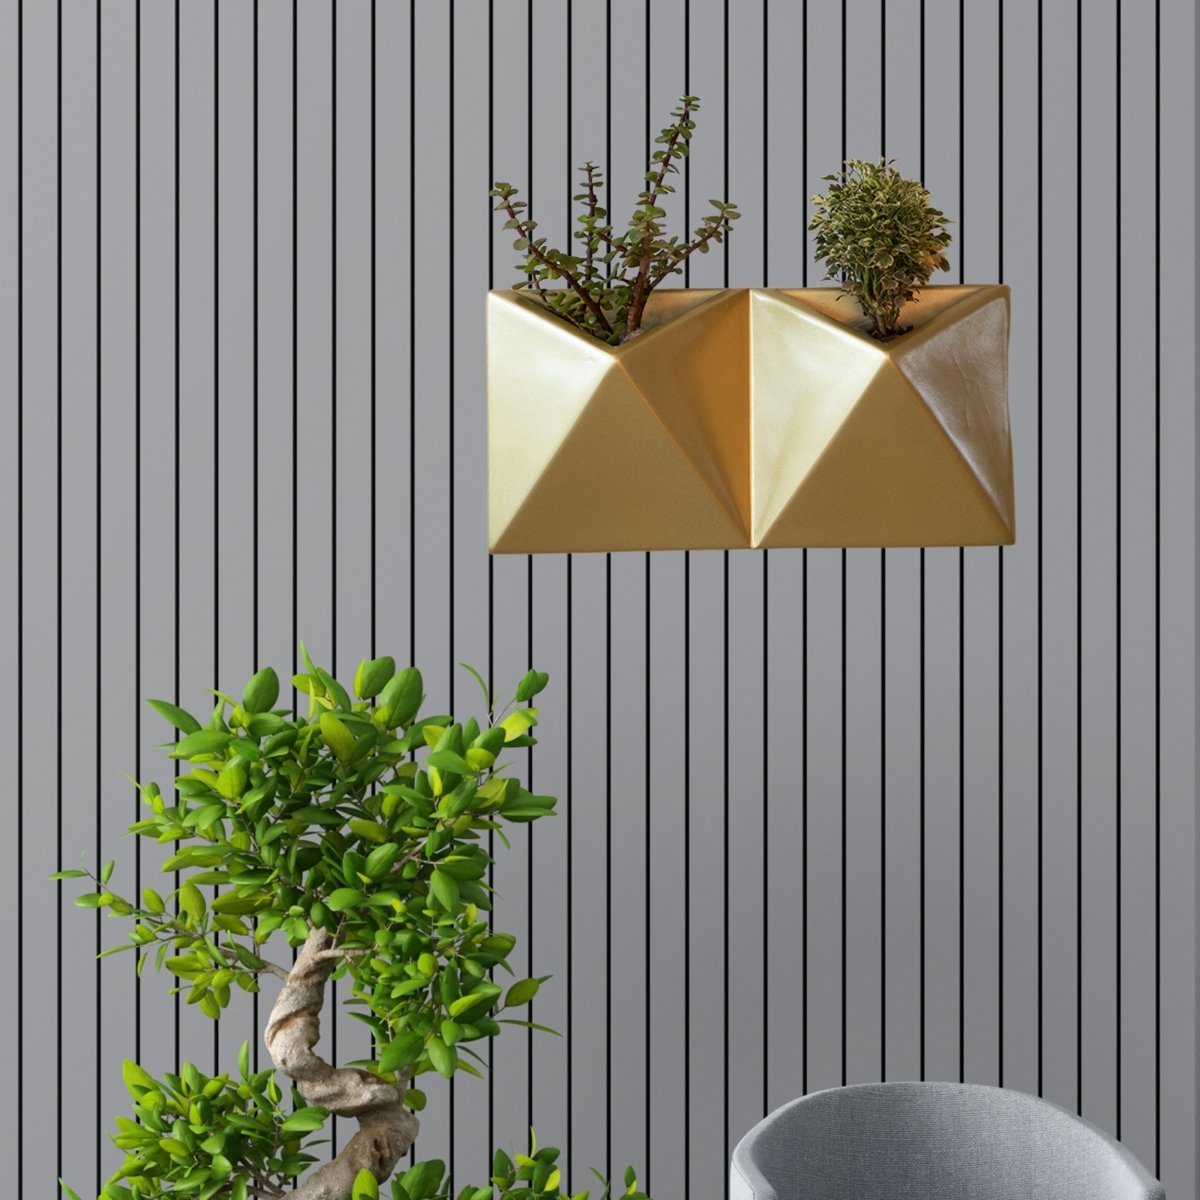 Kezevel Indoor Outdoor FRP Planters - Lightweight Durable Gold Vertical Wall Flower Pot, Wall Planter for Garden Home Décor